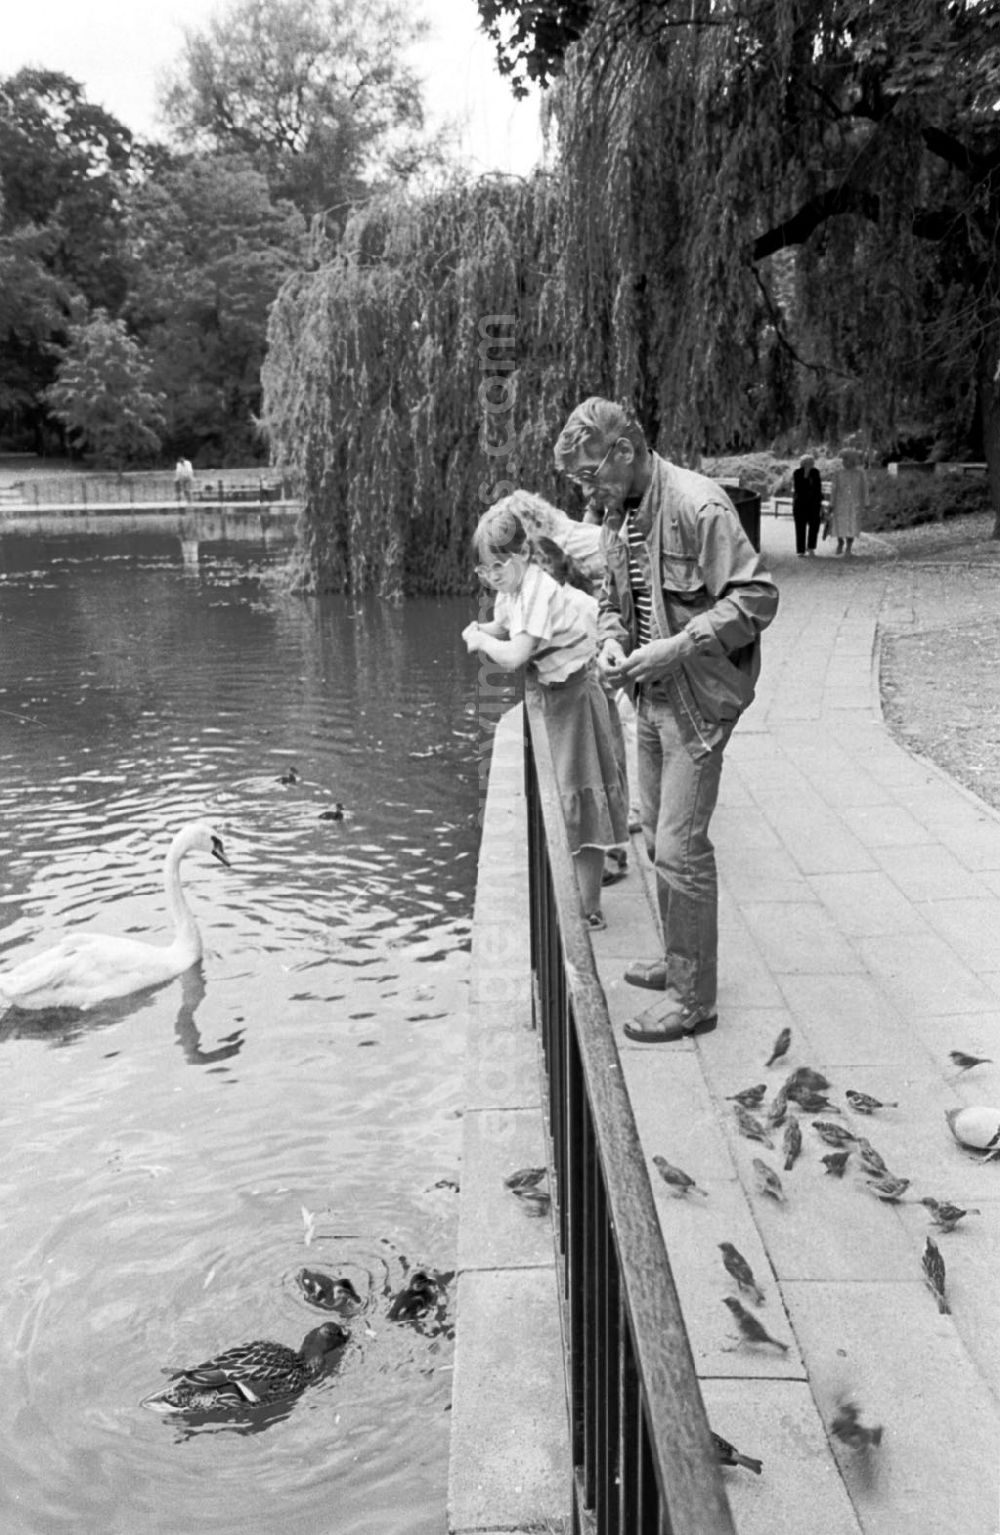 GDR photo archive: Berlin-Friedrichshain - versch. Motive vom Märchenbrunnen in Friedrichshain 6/1989